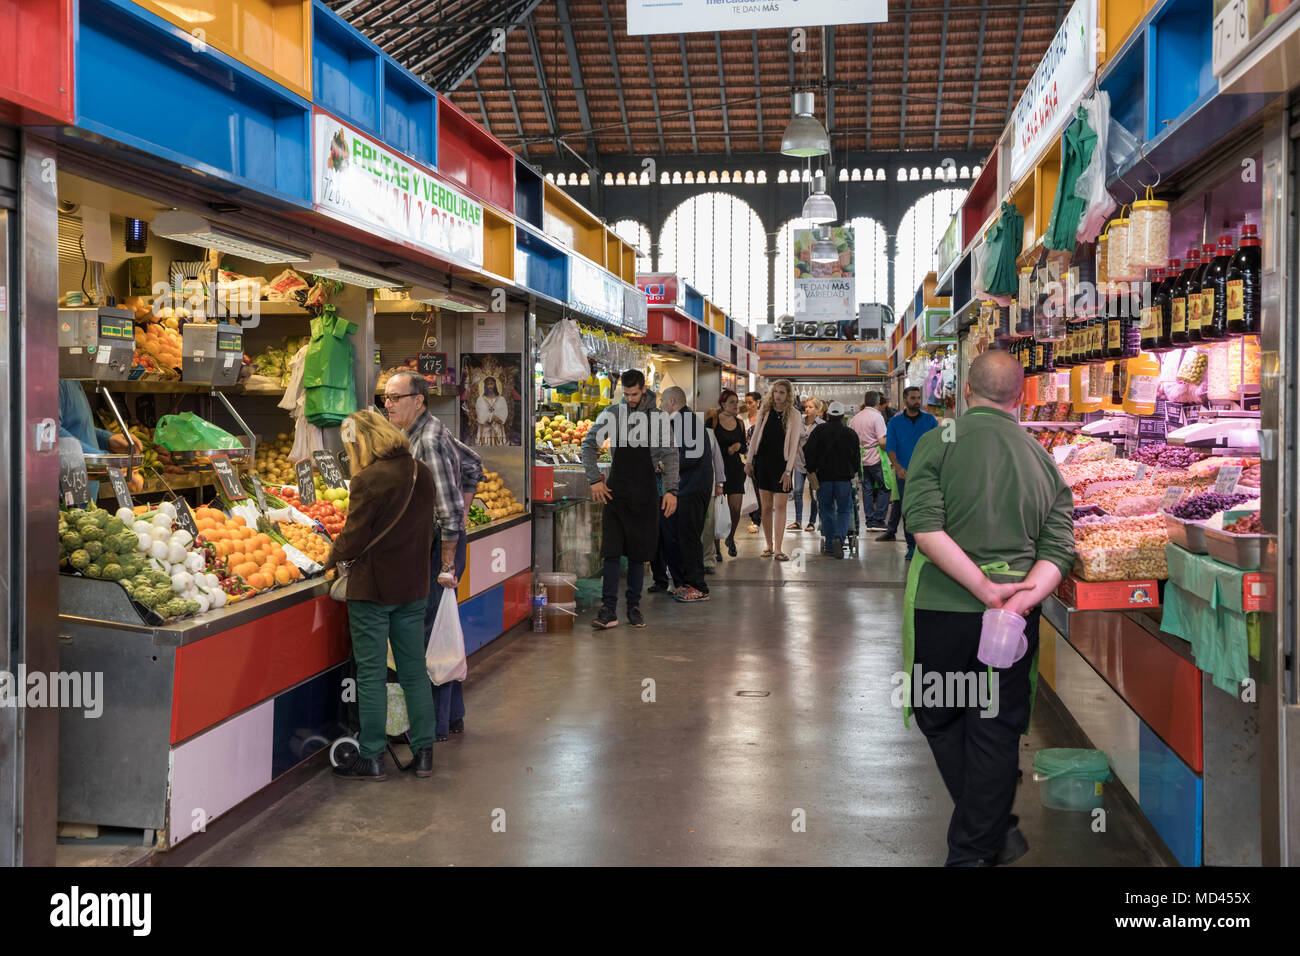 Mercado Central de Atarazanas, Malaga, Costa del Sol, Andalucia, Spain, Europe Stock Photo